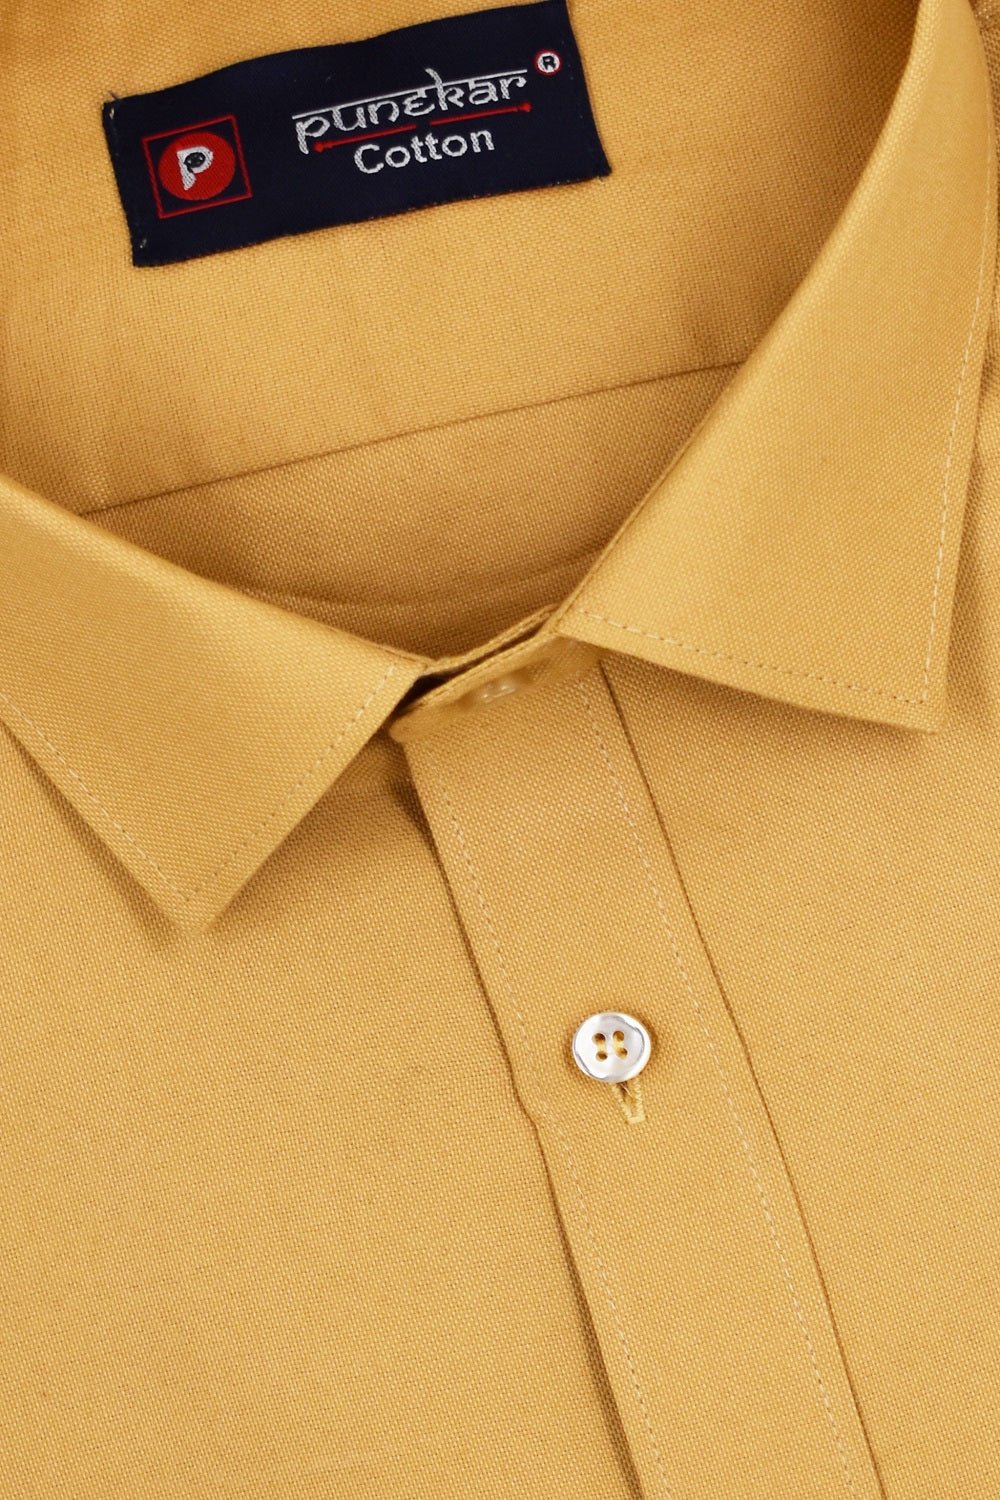 Punekar Cotton Gold Color Rich Cotton Formal Shirt For Men&